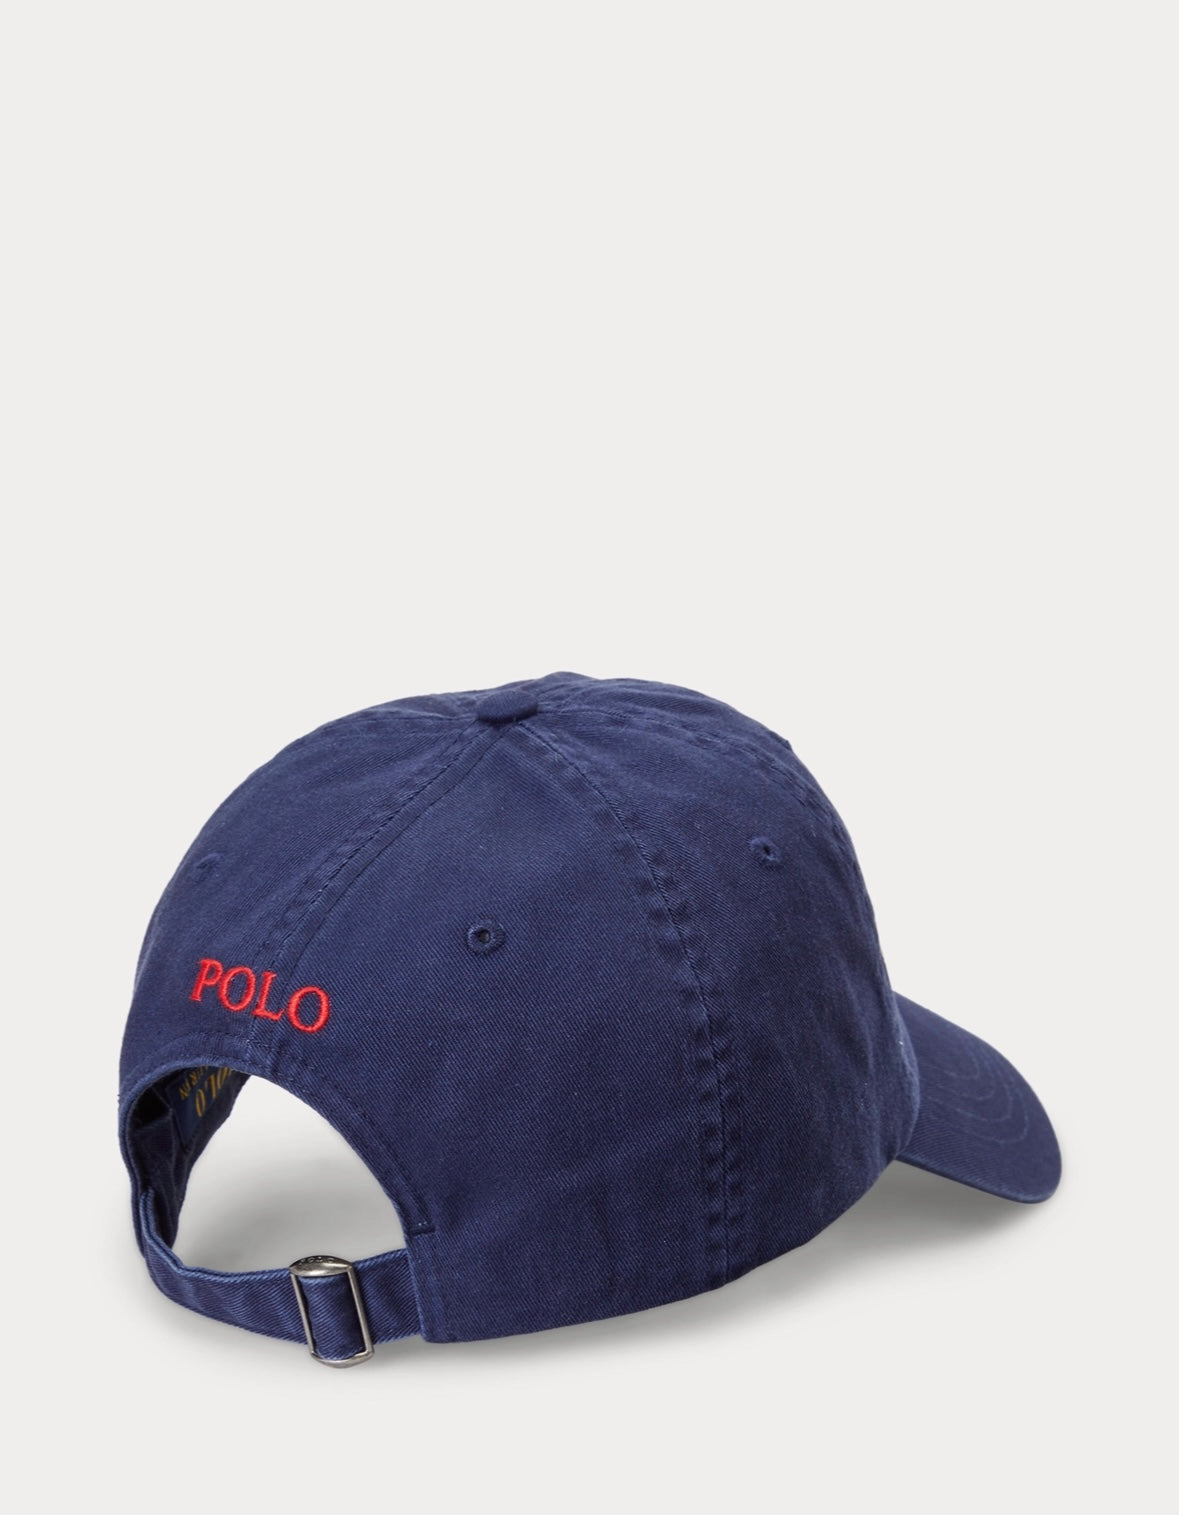 Polo Ralph Lauren caps - Navy